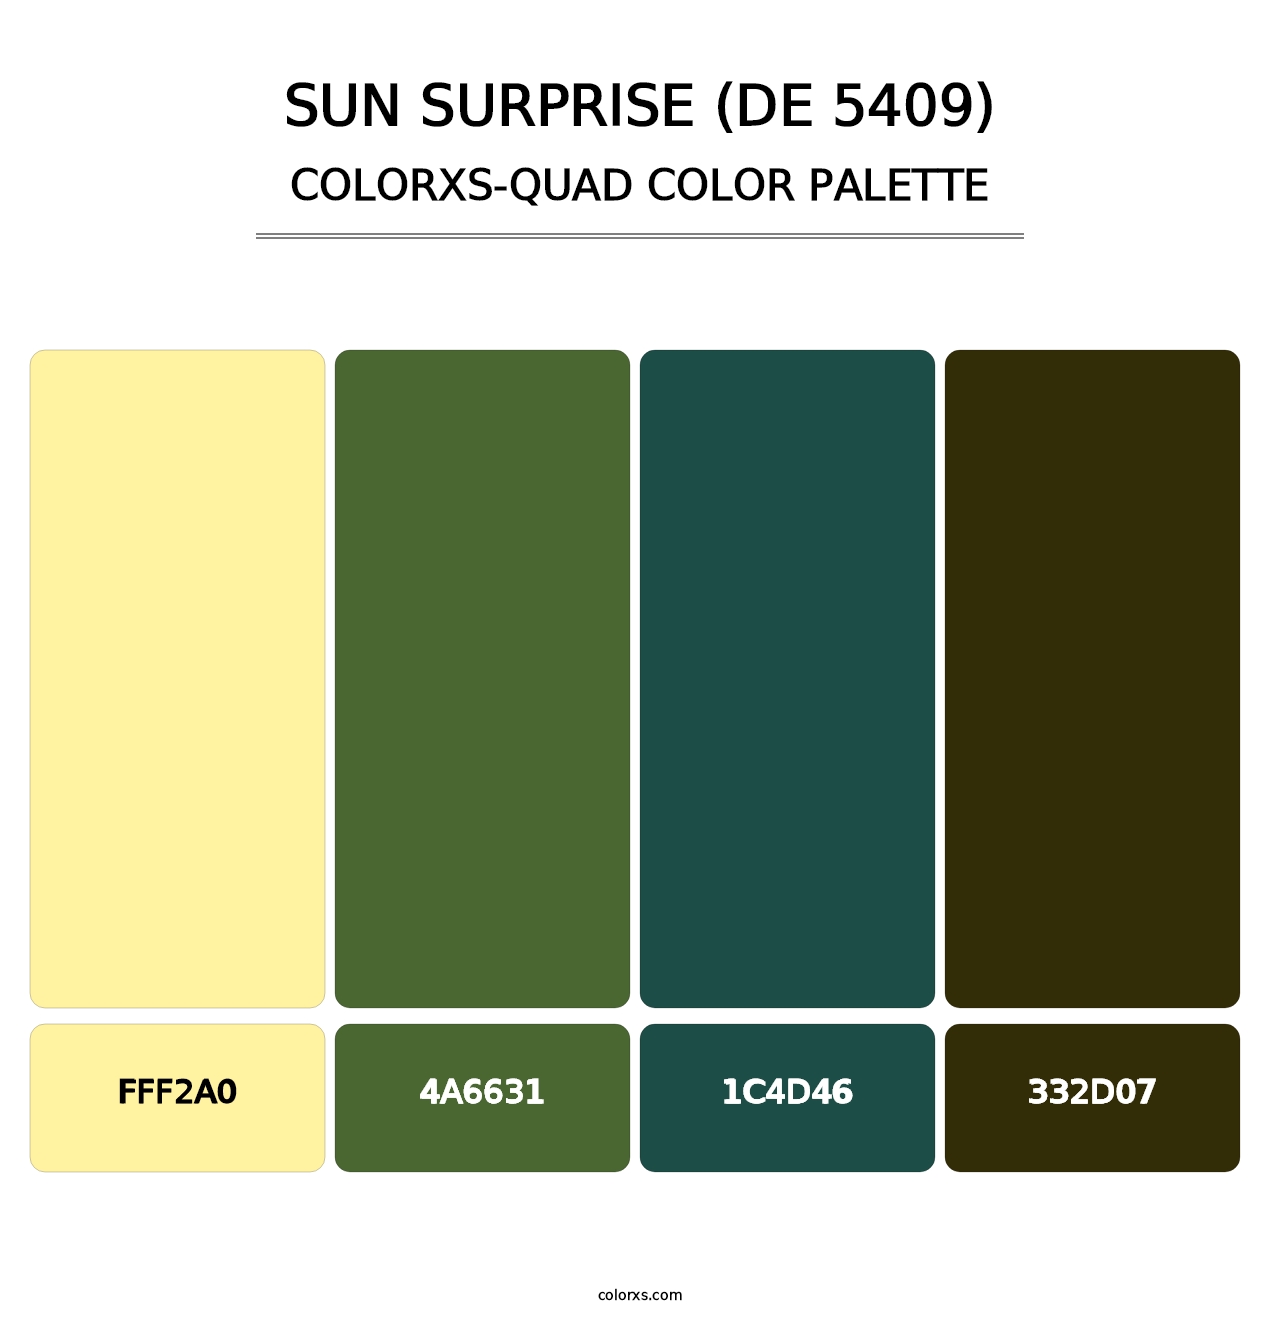 Sun Surprise (DE 5409) - Colorxs Quad Palette